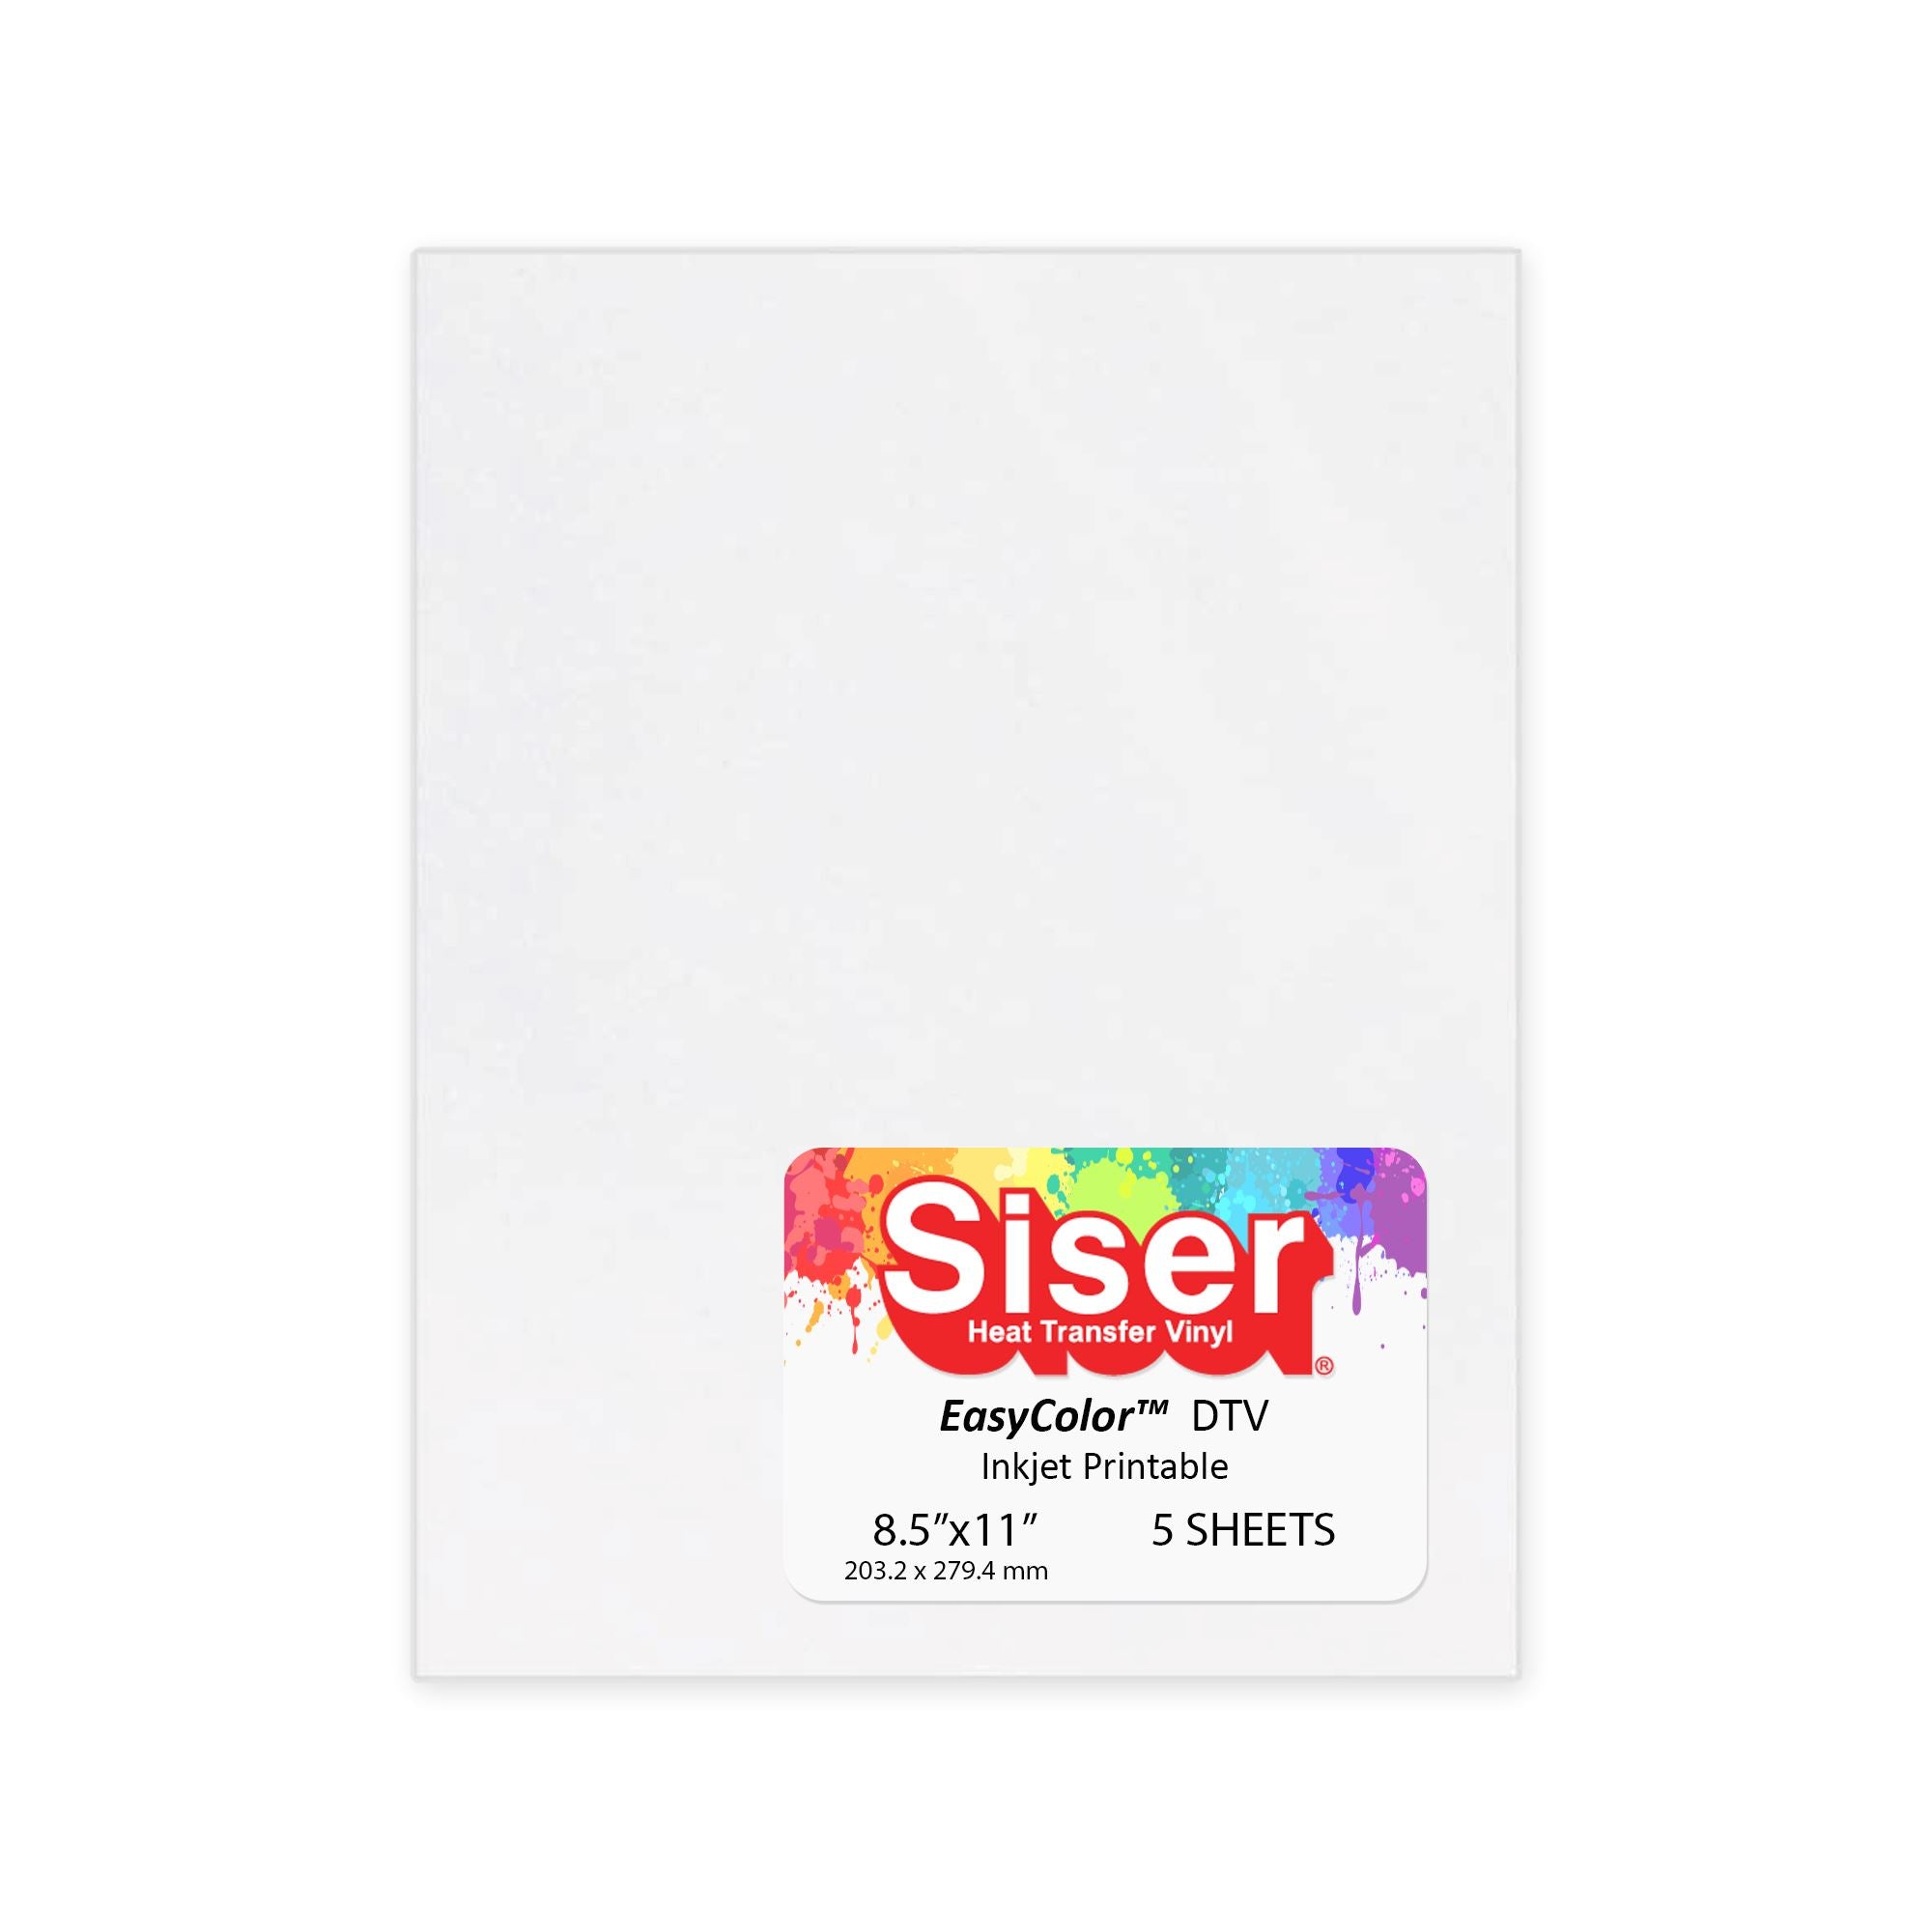 Siser EasySubli Sublimation Heat Transfer Vinyl 8.4 x 11 - 5 Pack